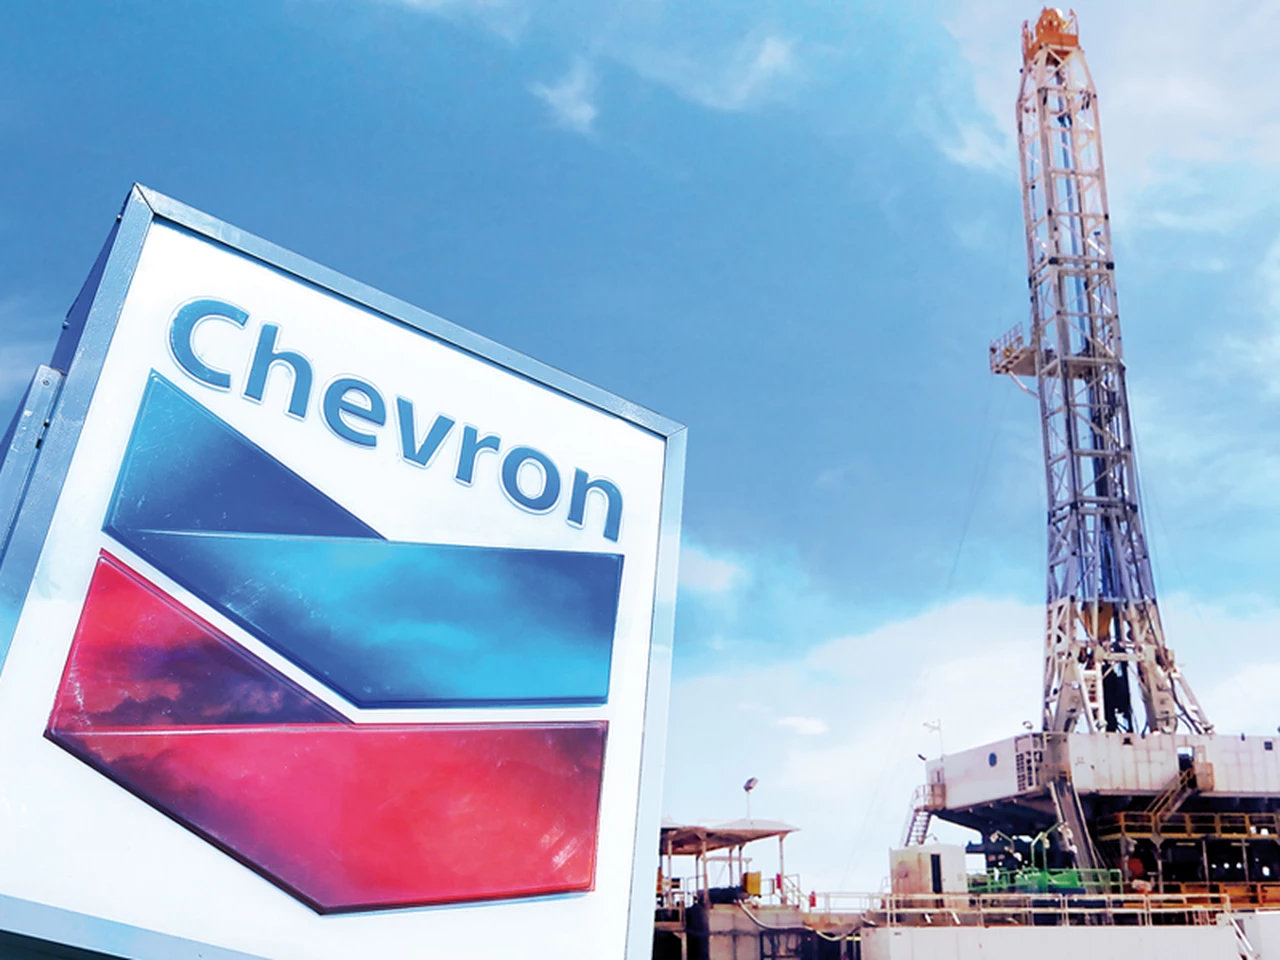 A diferencia del agro y Flybondi, Chevron aprovecha un decreto de Massa para "cosechar" dólares y otros beneficios